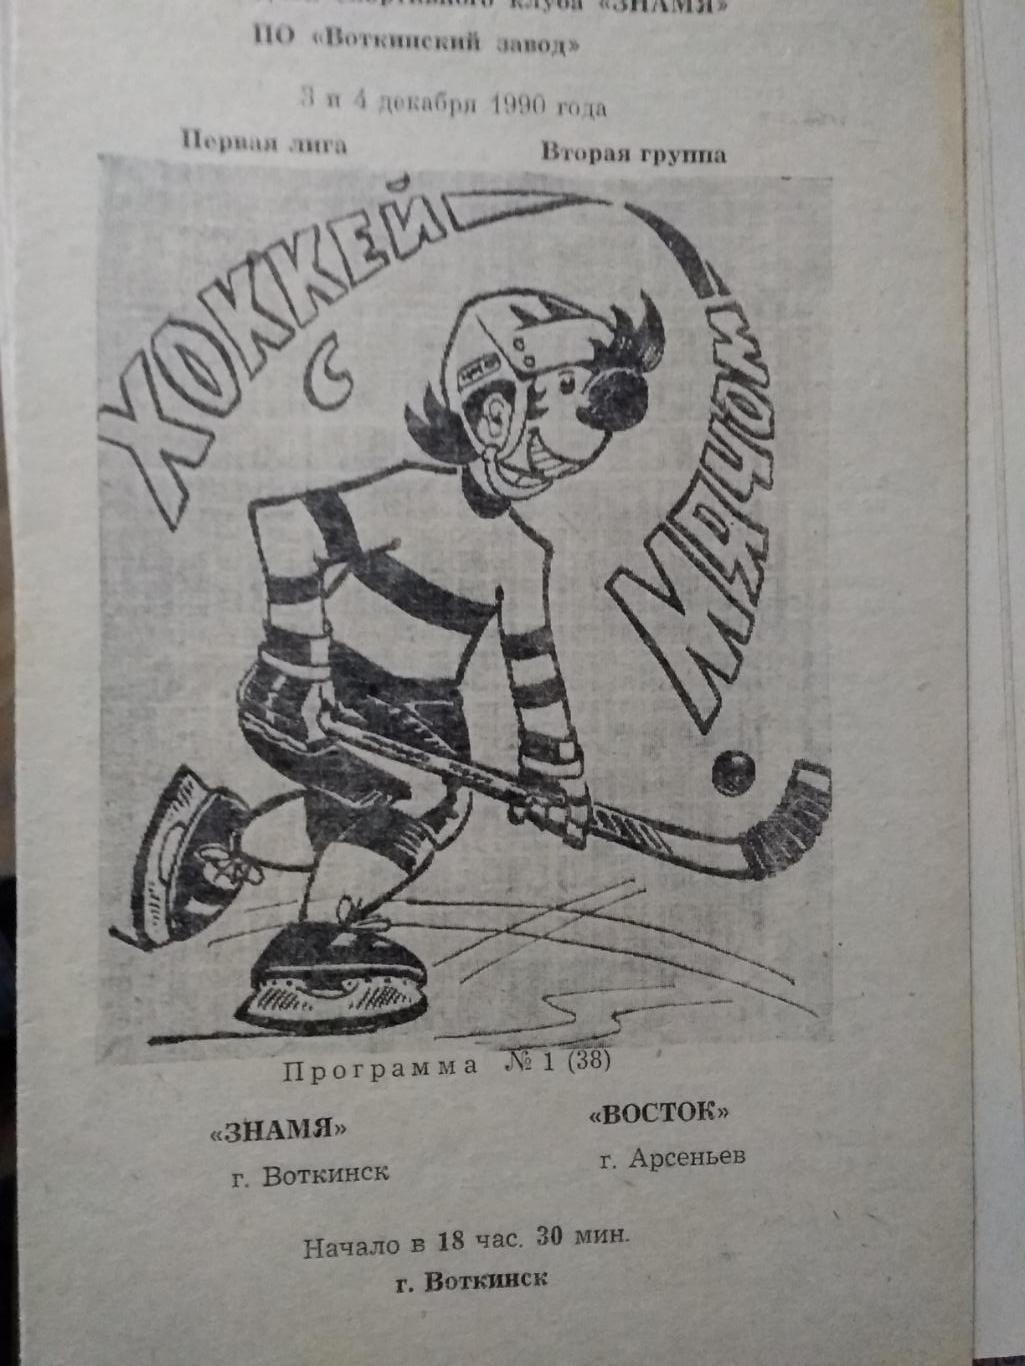 Знамя (Воткинск) - Восток (Арсеньев). 3-4 декабря 1990.